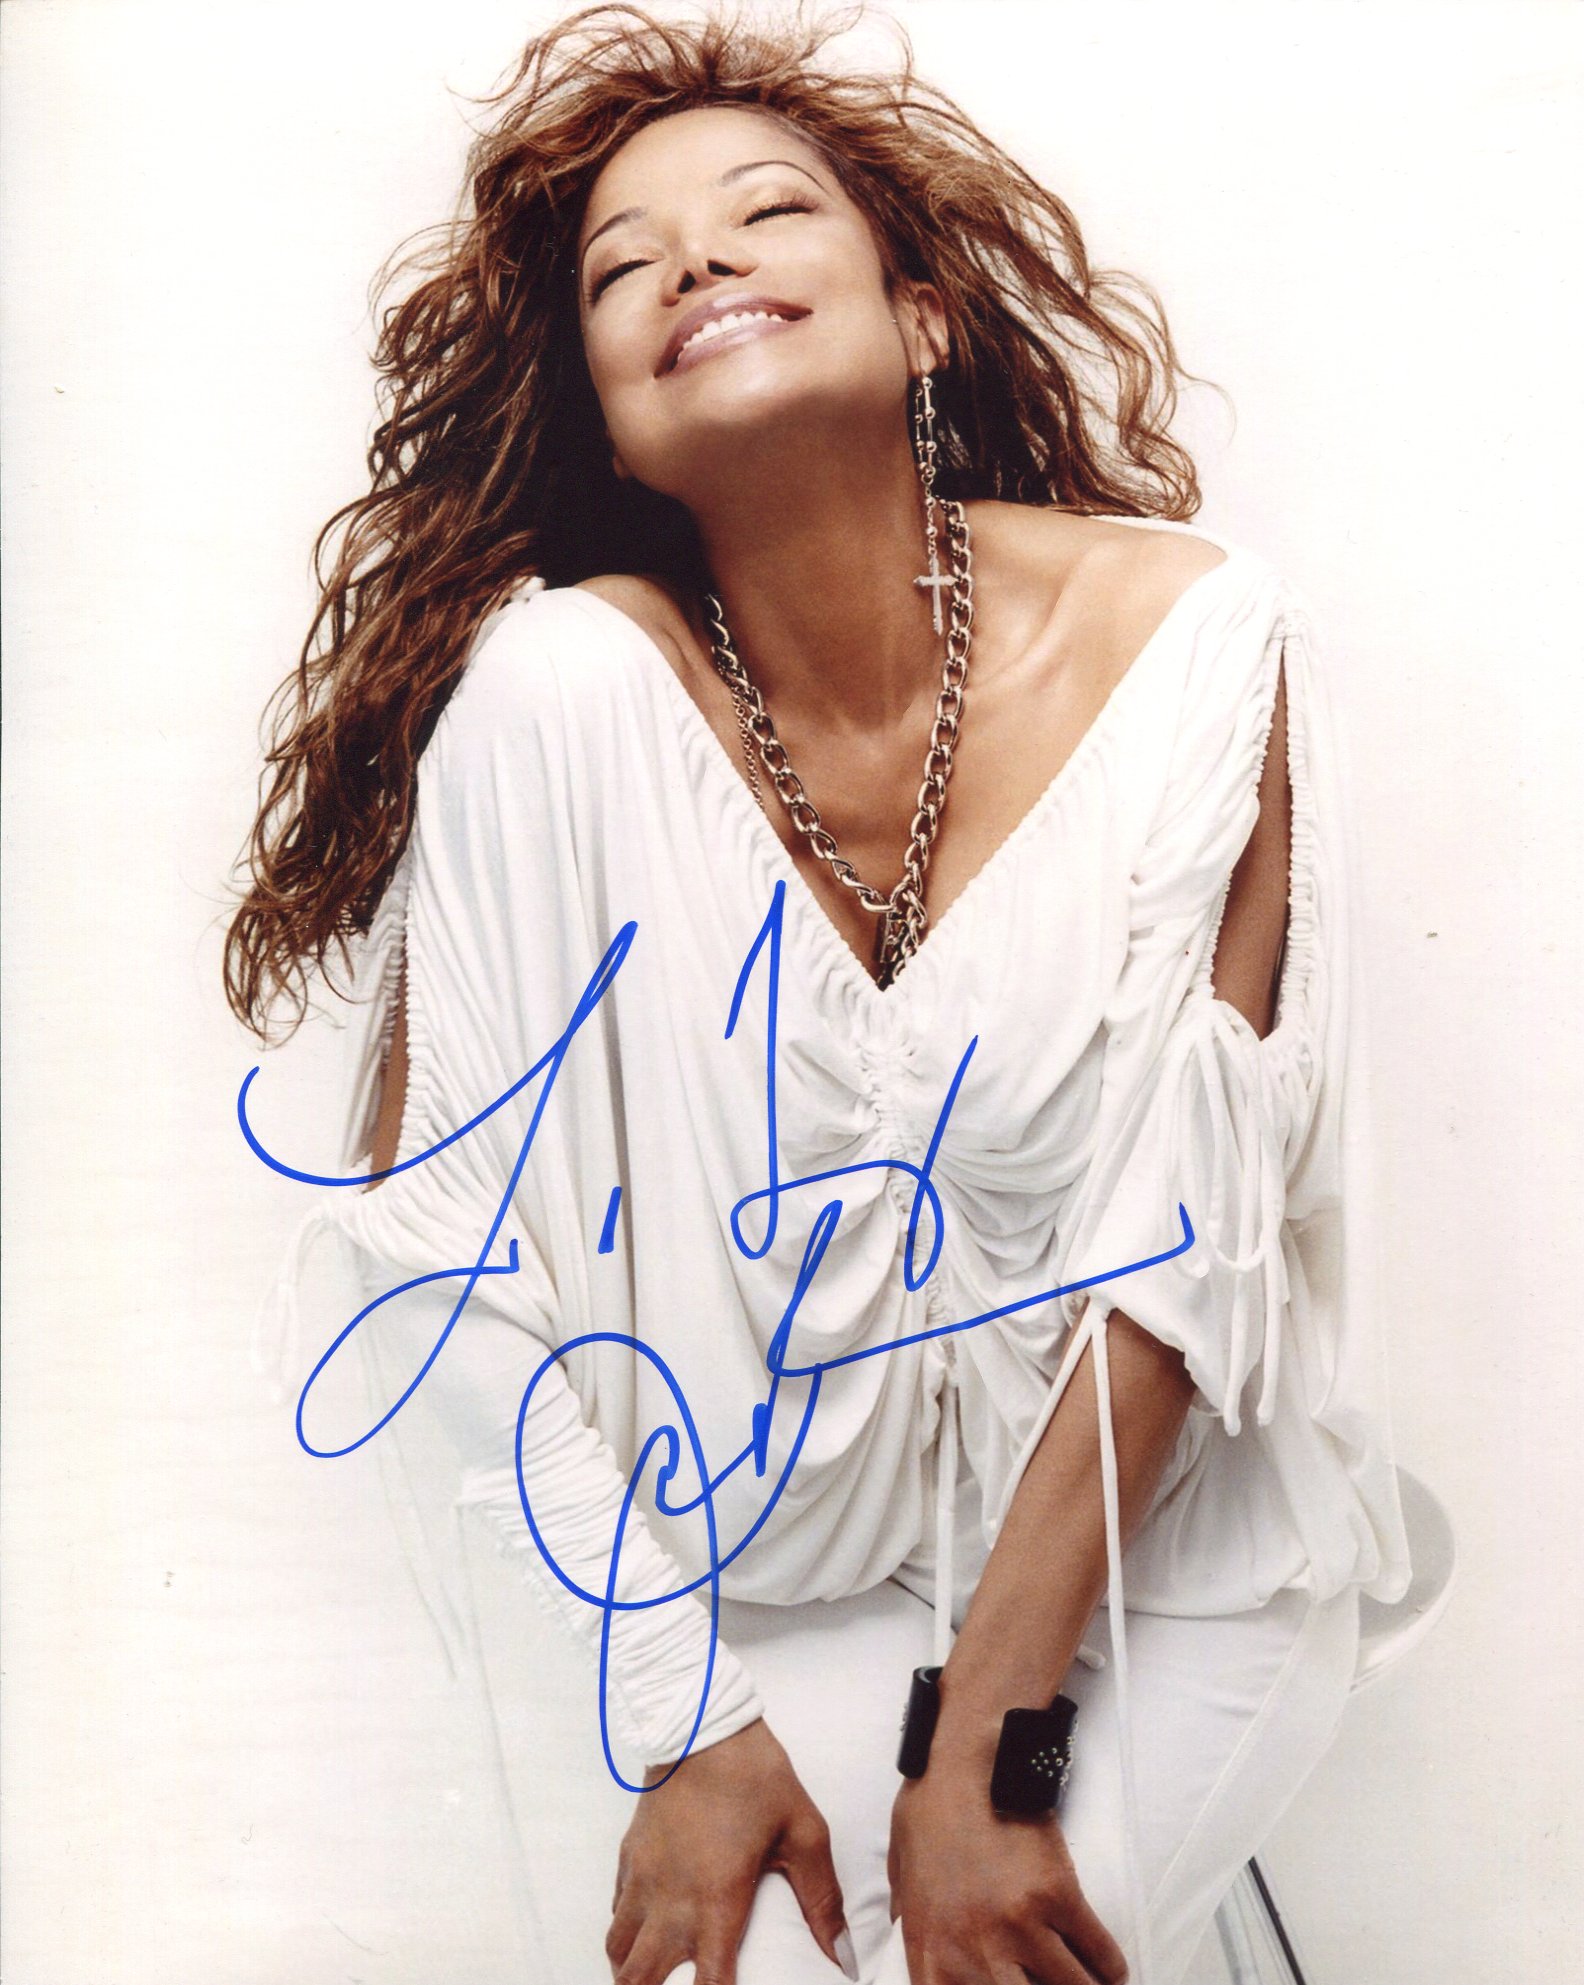 Latoya Jackson, amazing 8x10 photo signed by pop star Latoya Jackson, brother of Michael Jackson.